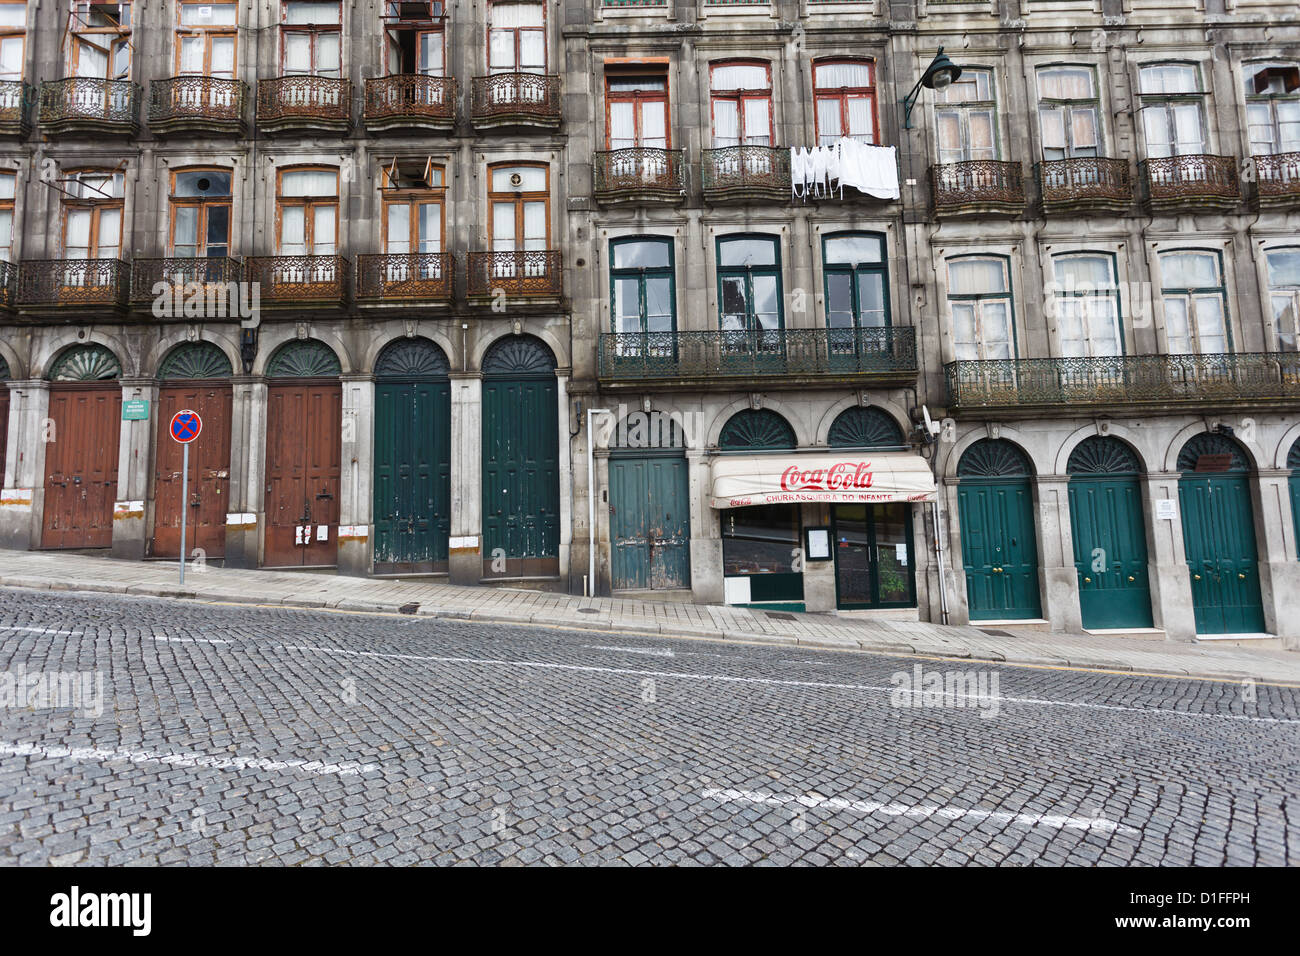 Fassade der unteren Geschosse eines Apartmenthauses in einer steil abfallenden Kopfsteinpflasterstraße in Porto Portgal. Die Fenster und Türen ändern sich in Größe und Höhe, wenn man die Straße hinunter fährt. Stockfoto